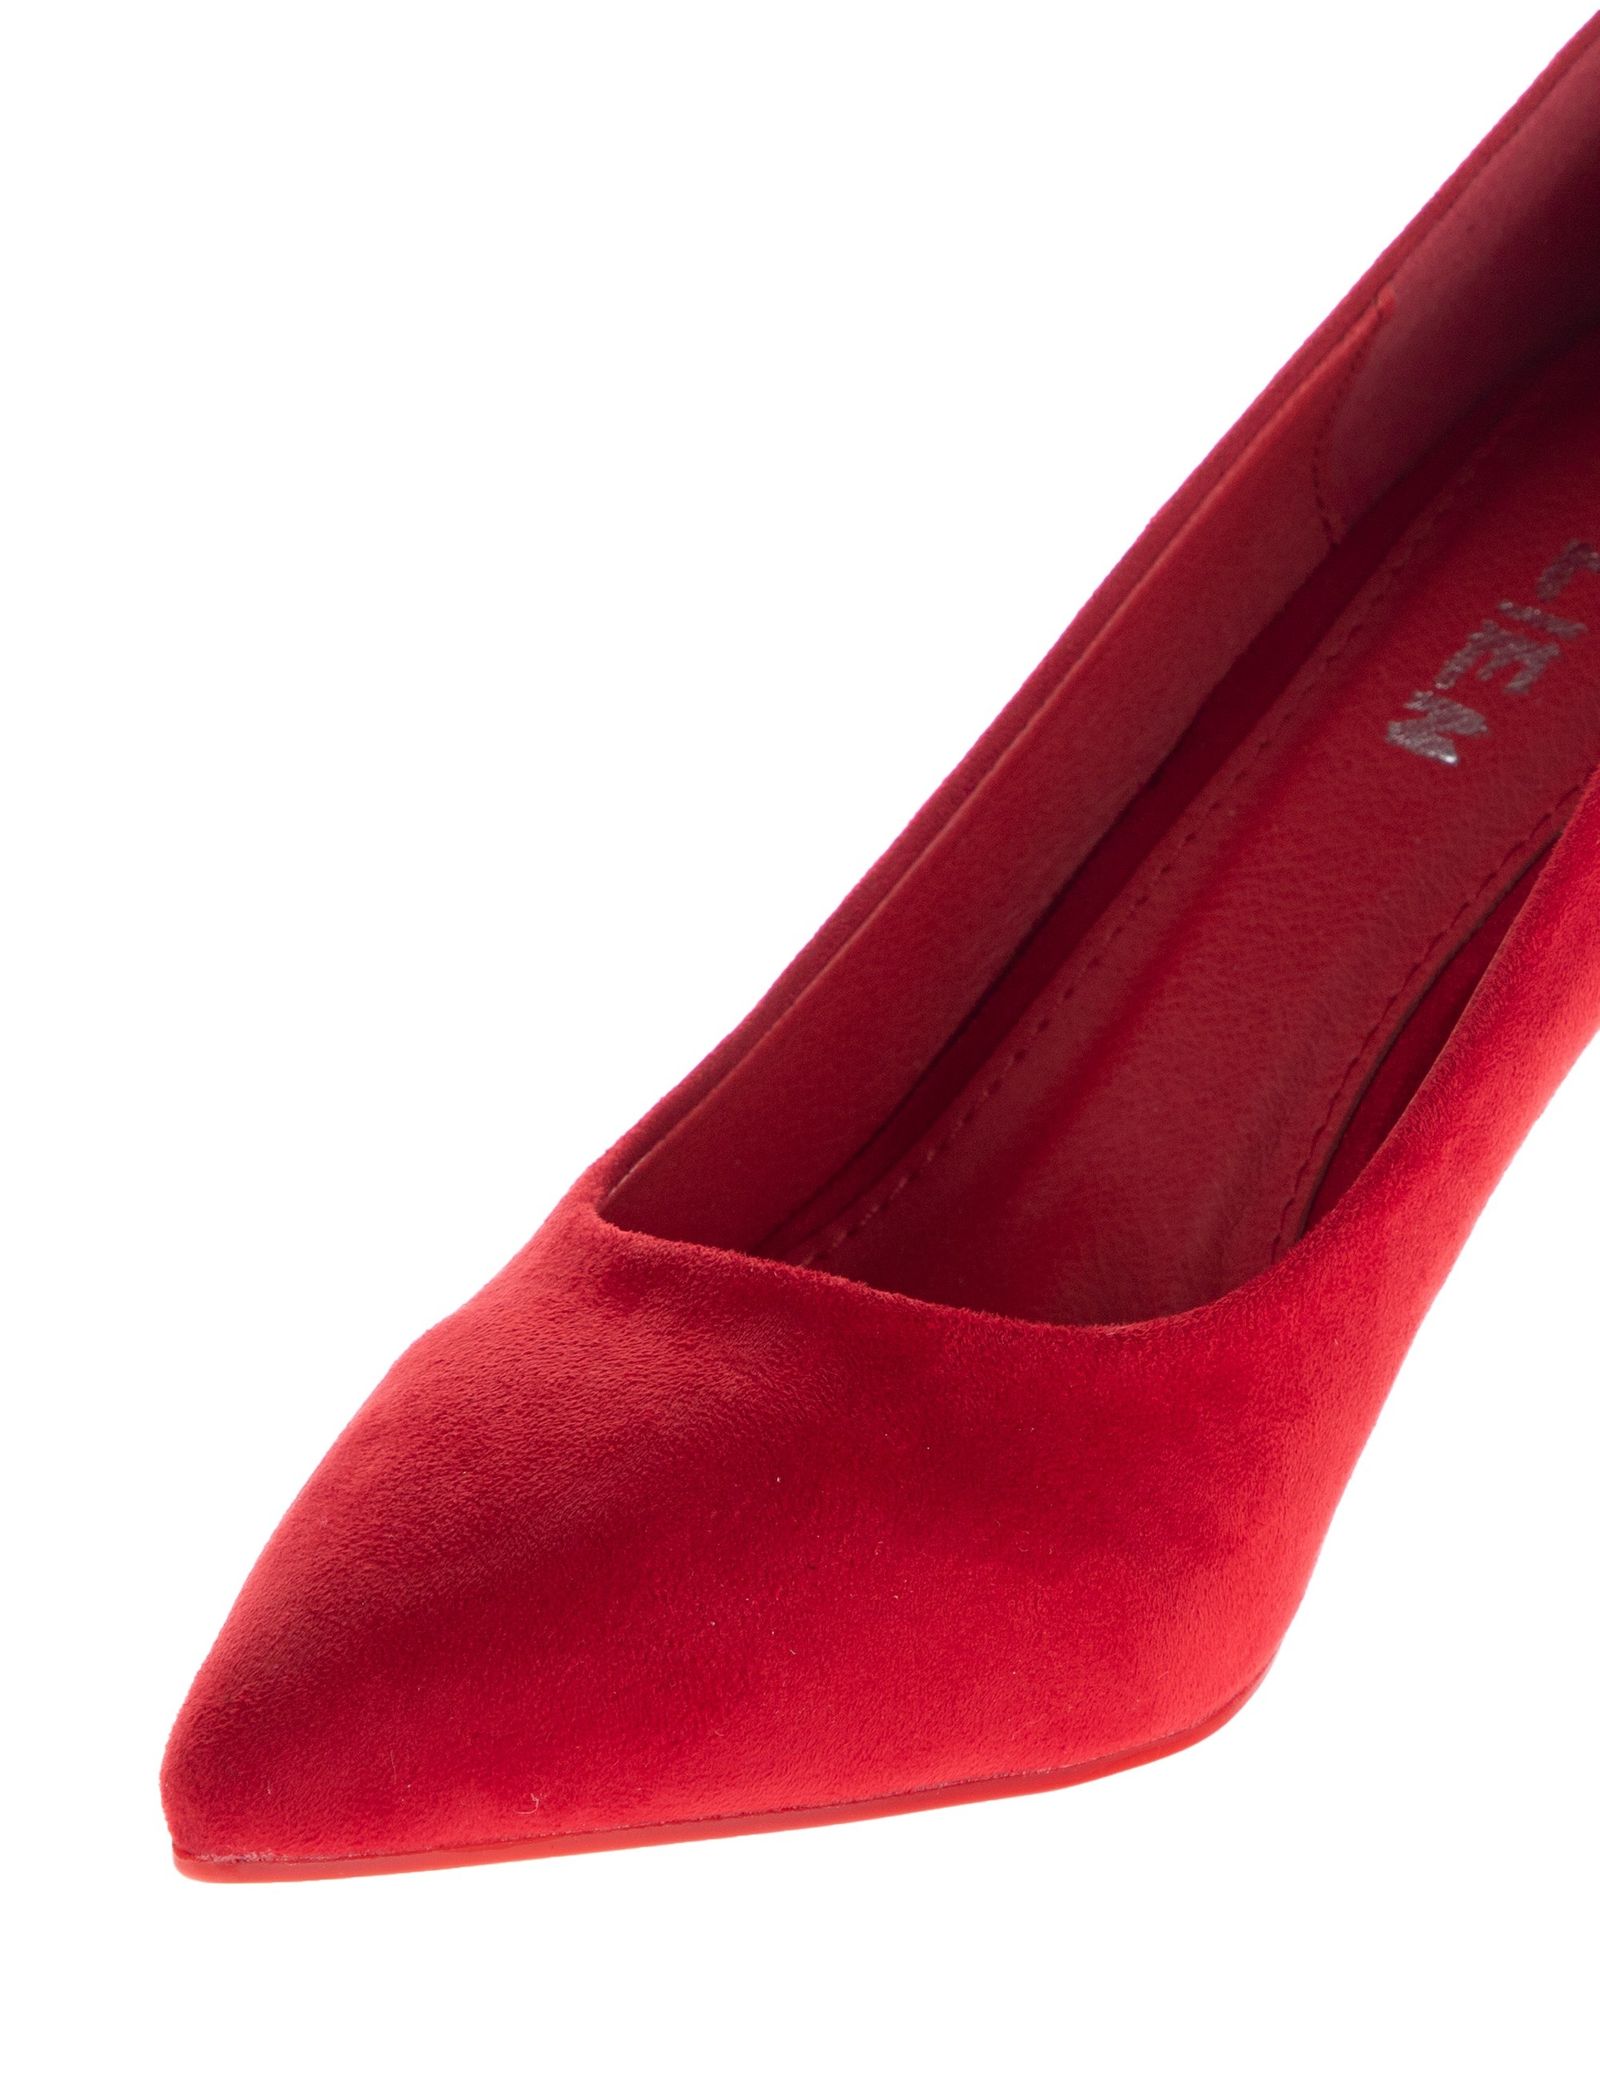 کفش پاشنه بلند زنانه - مالین - قرمز - 7